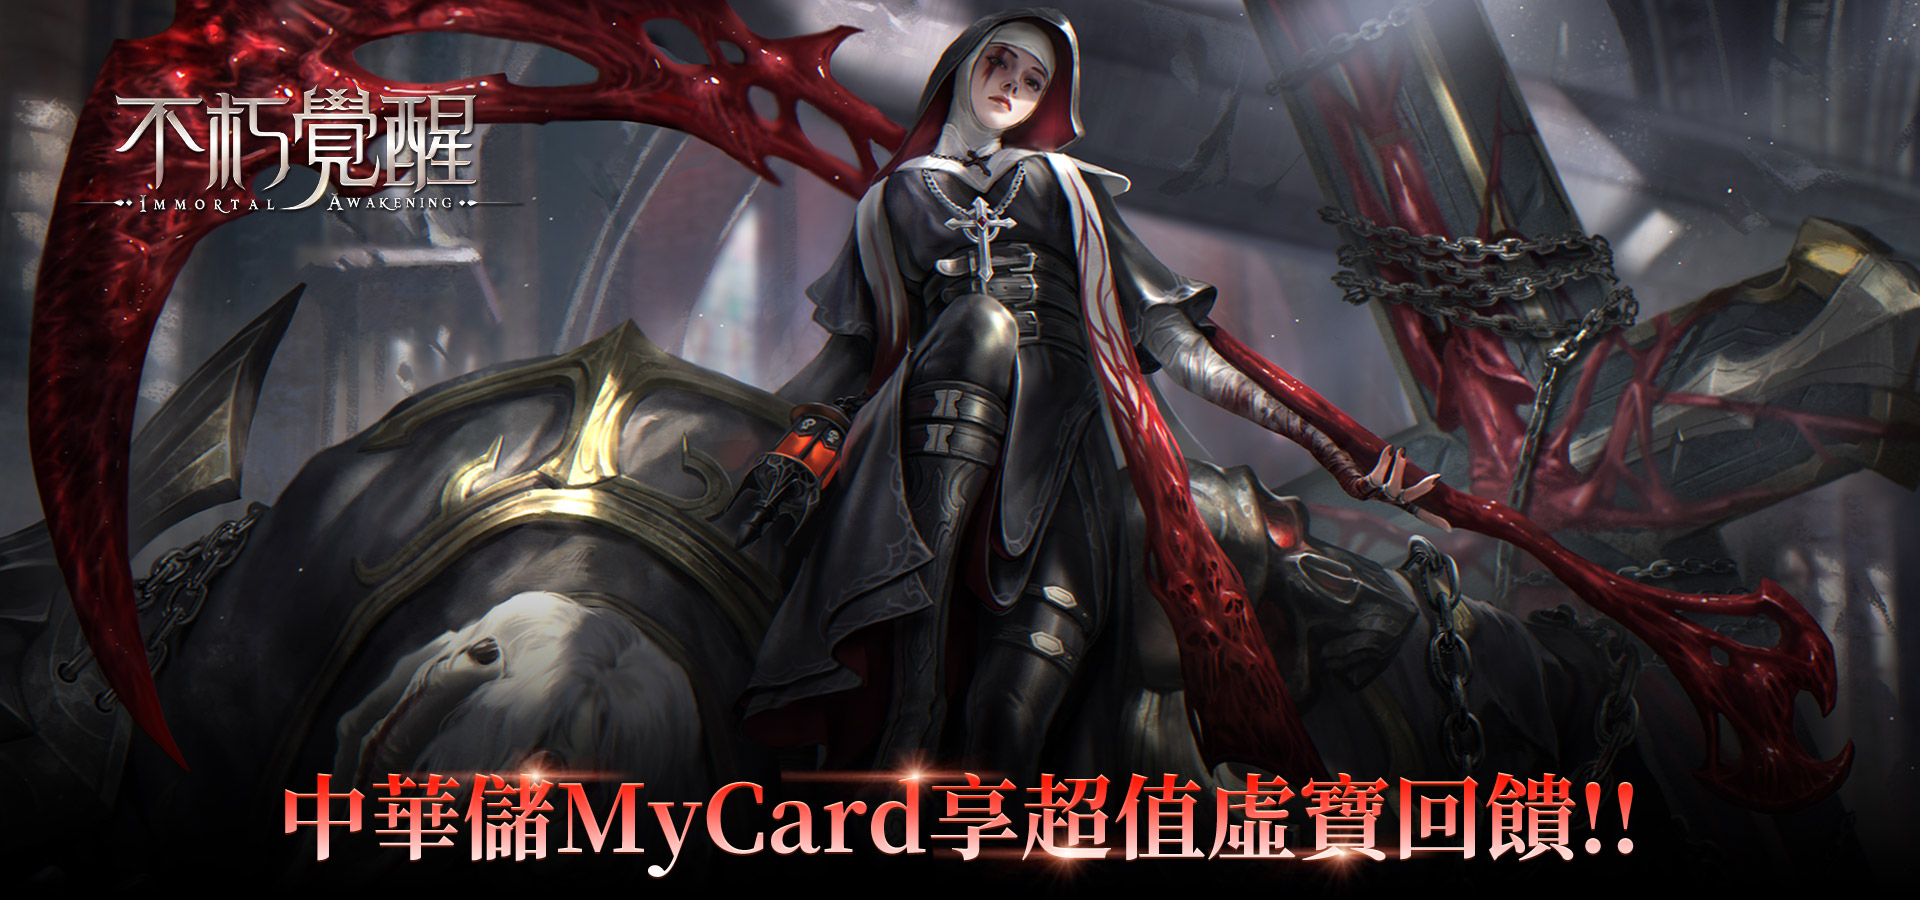   《不朽覺醒》MyCard儲值享超值虛寶回饋!! | 中華電信